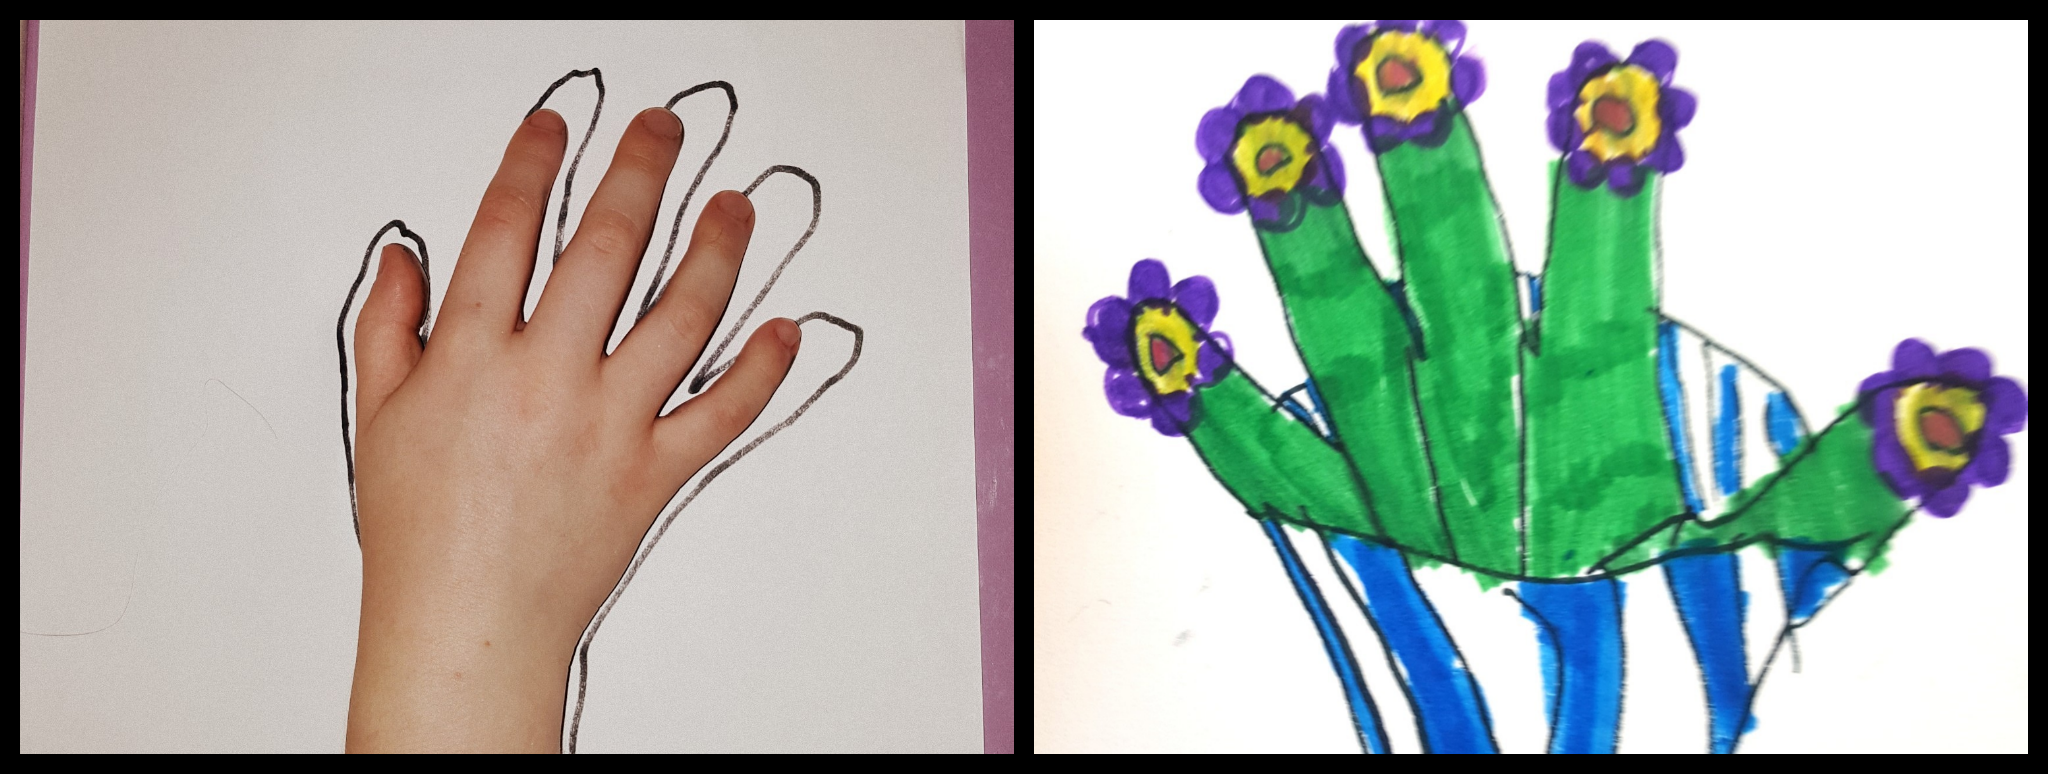 Handprint Art - Vase - Hands-On Teaching Ideas - Kindergarten Adventures